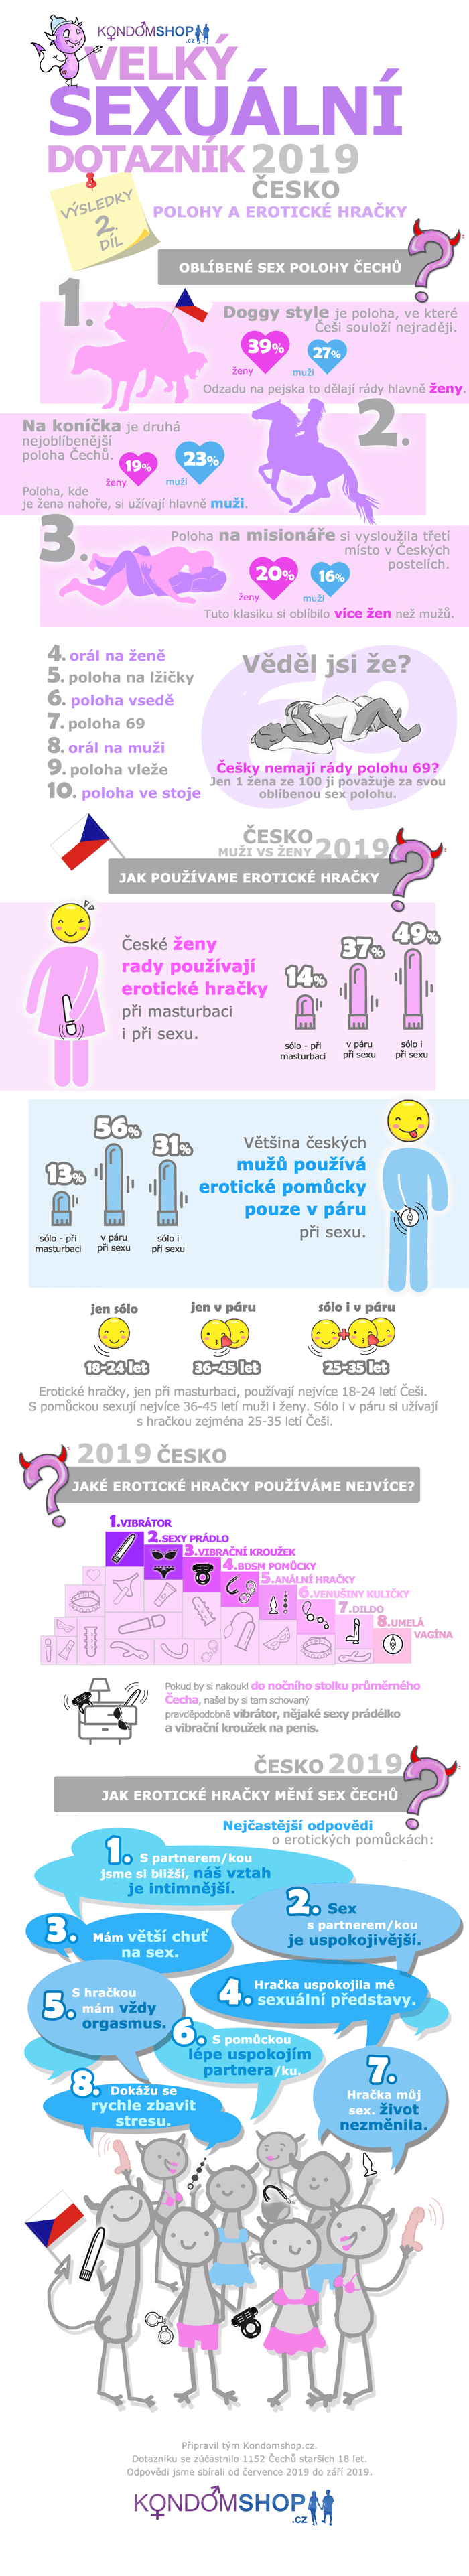 infografika 2. díl výsledků sexuálního průzkumu Čechů